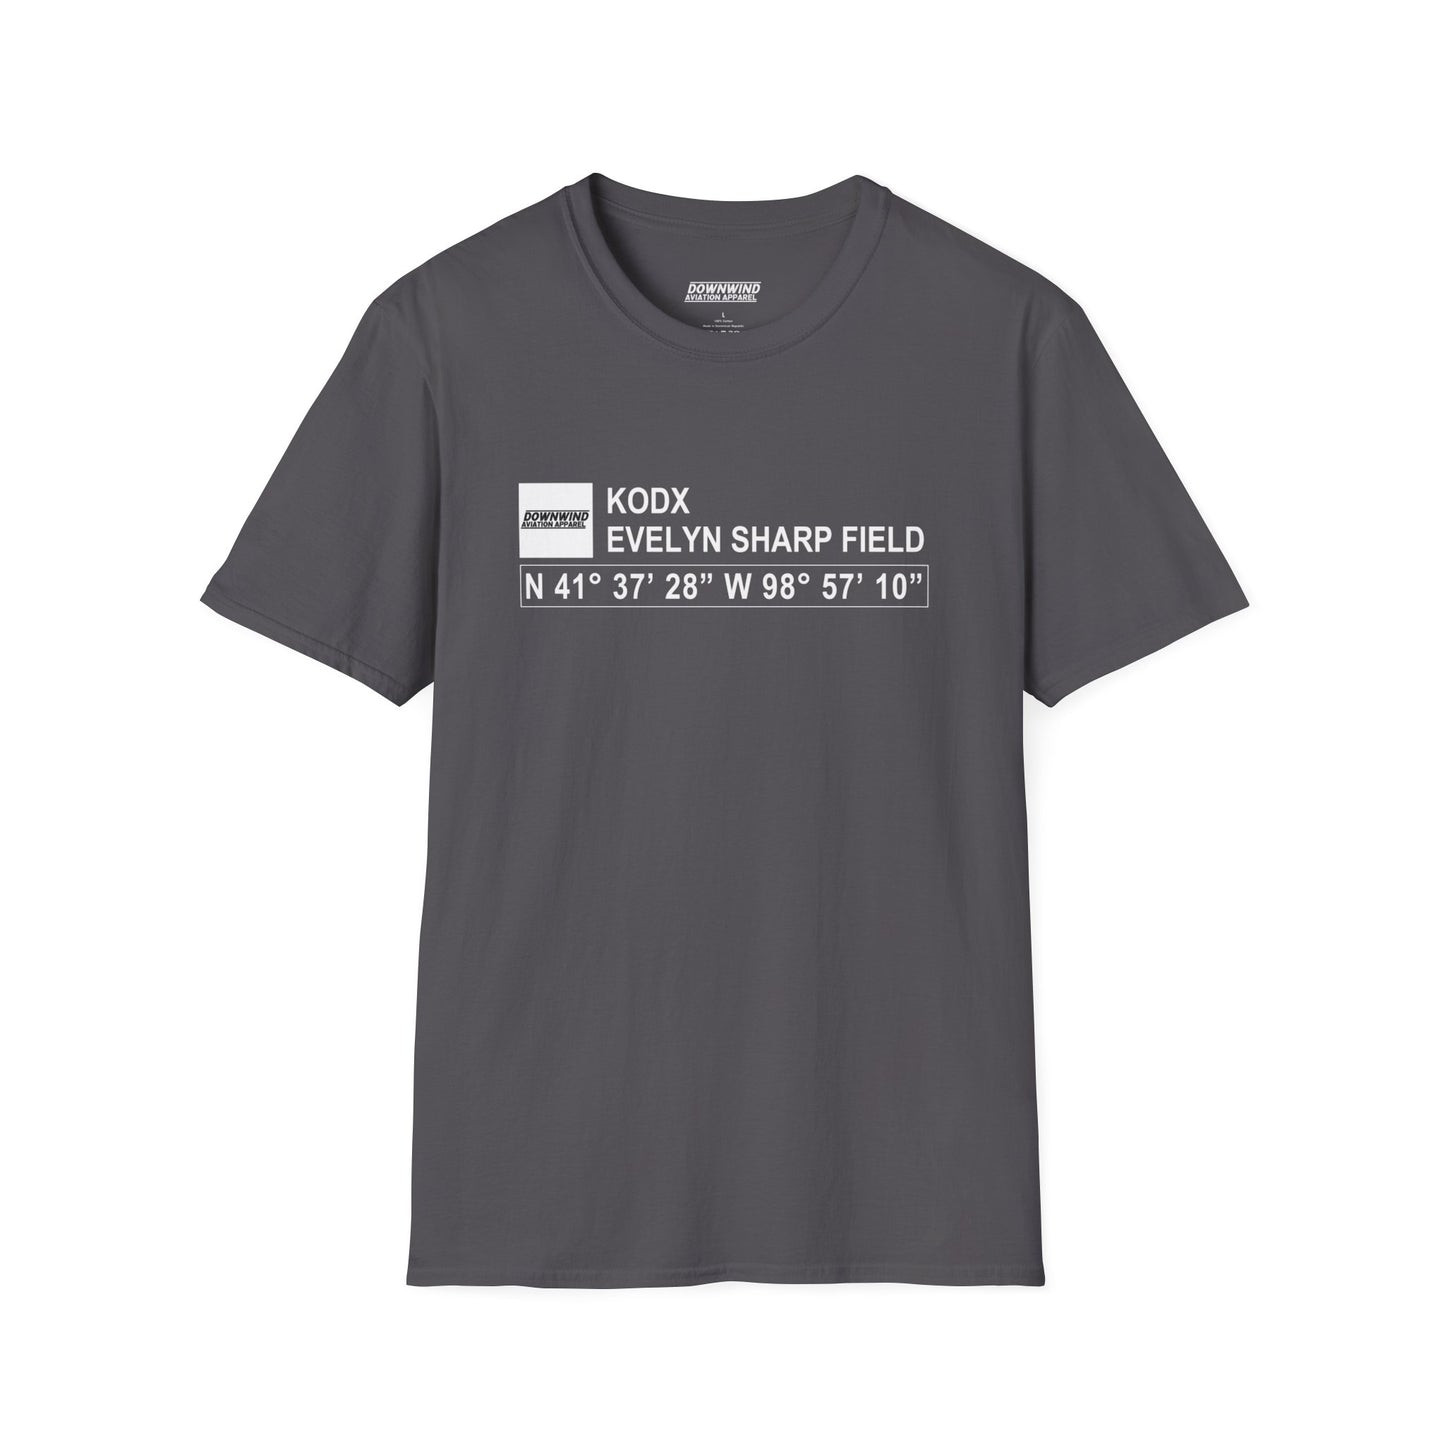 KODX / Evelyn Sharp Field Shirt